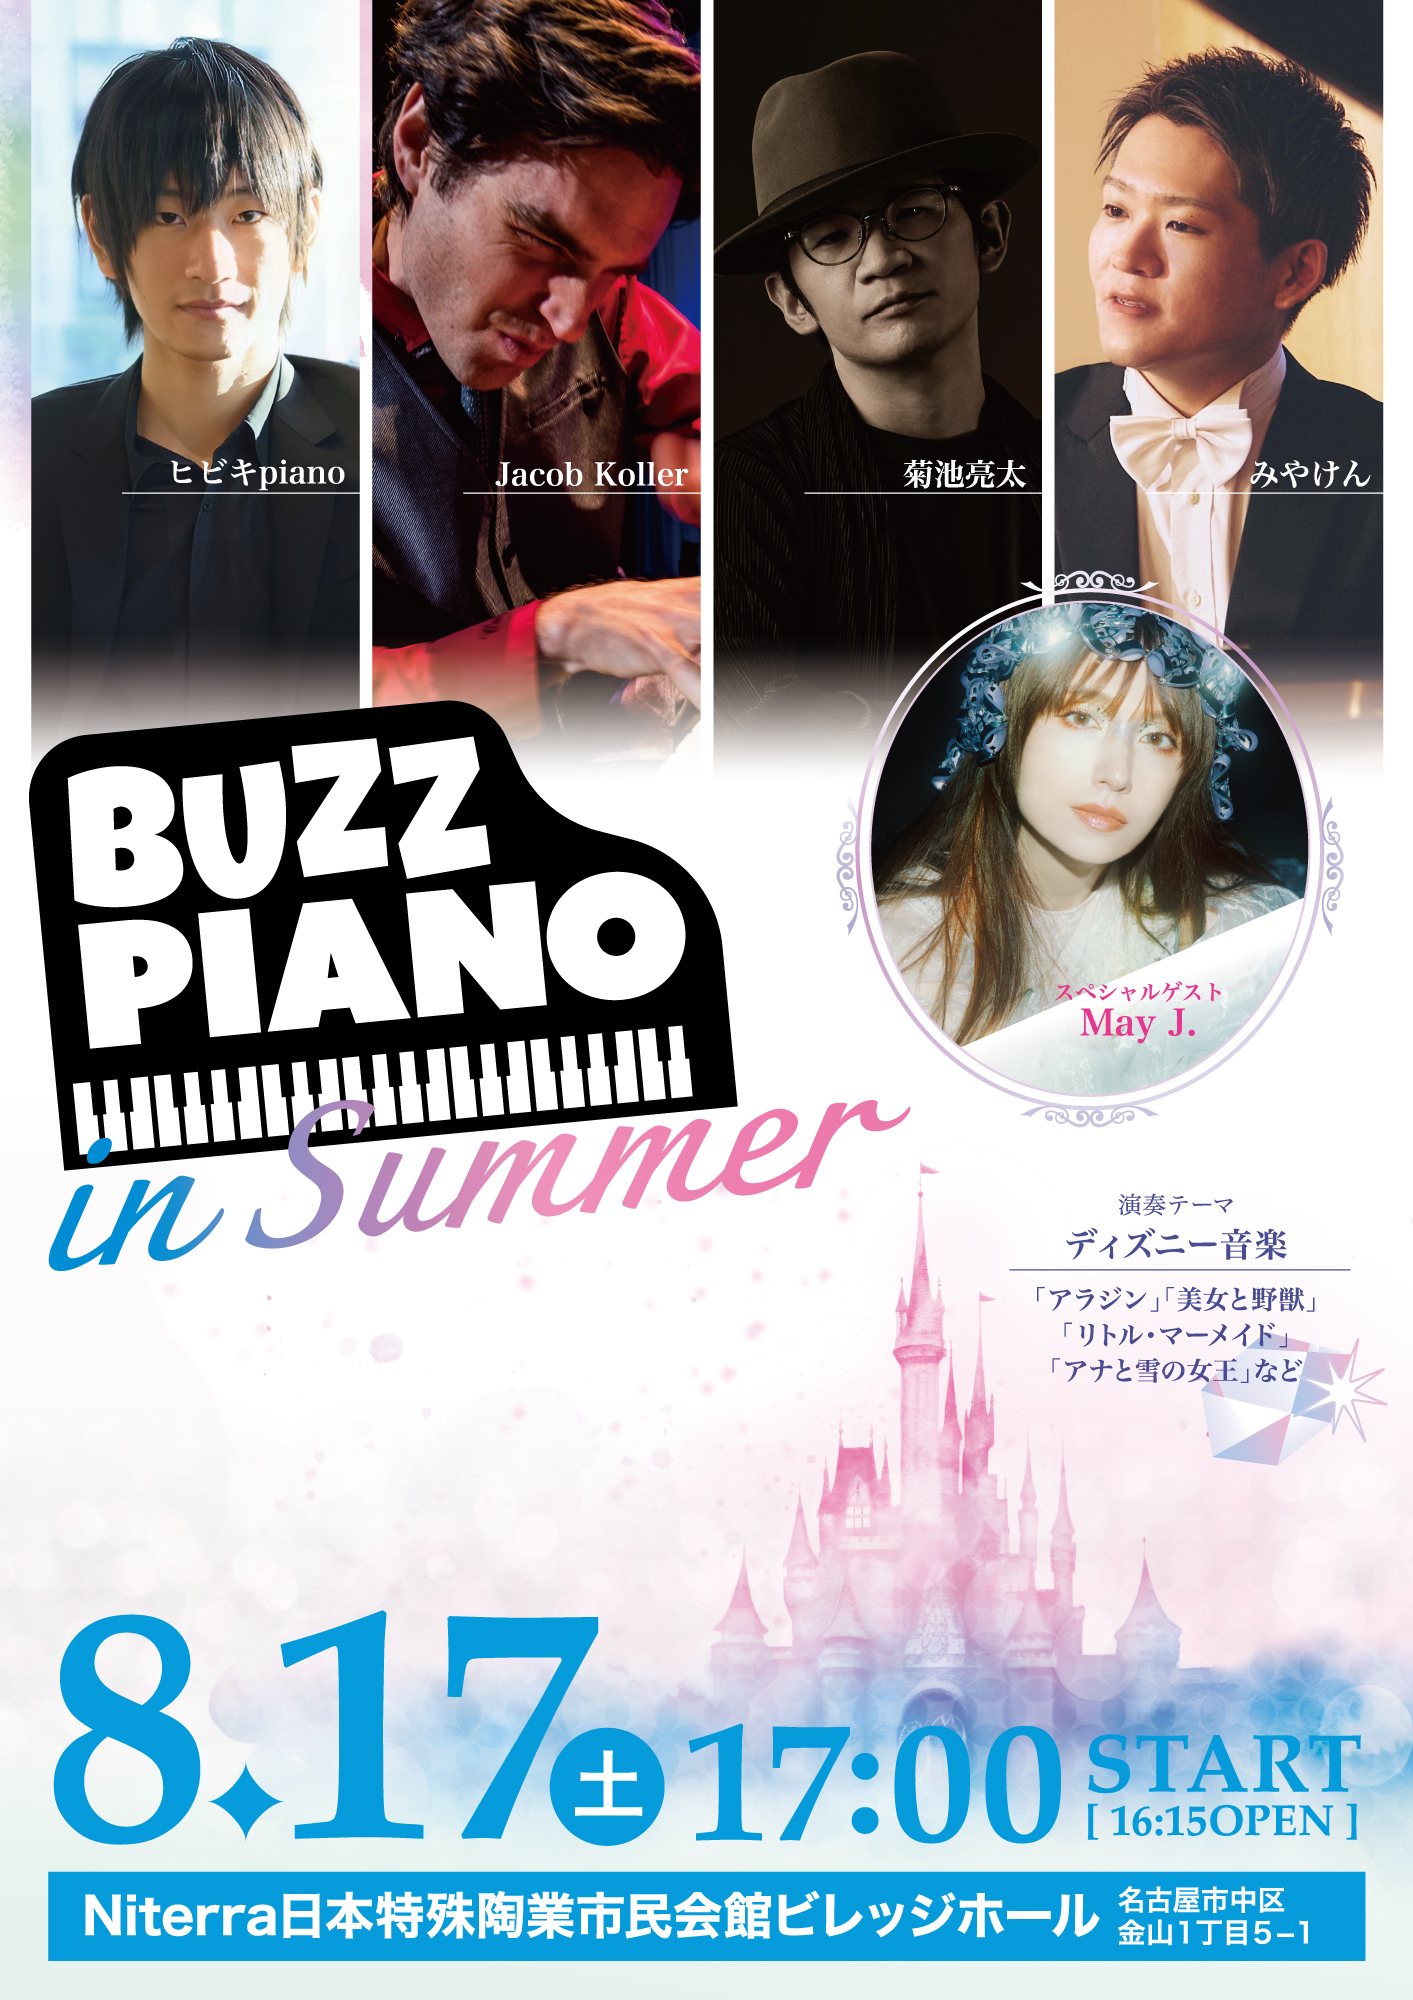 ピアニスト菊池亮太、Jacob Koller、みやけん、ヒビキpianoがコラボ『BUZZ PIANO in Summer』開催！スペシャルゲストはMay J.のサブ画像1